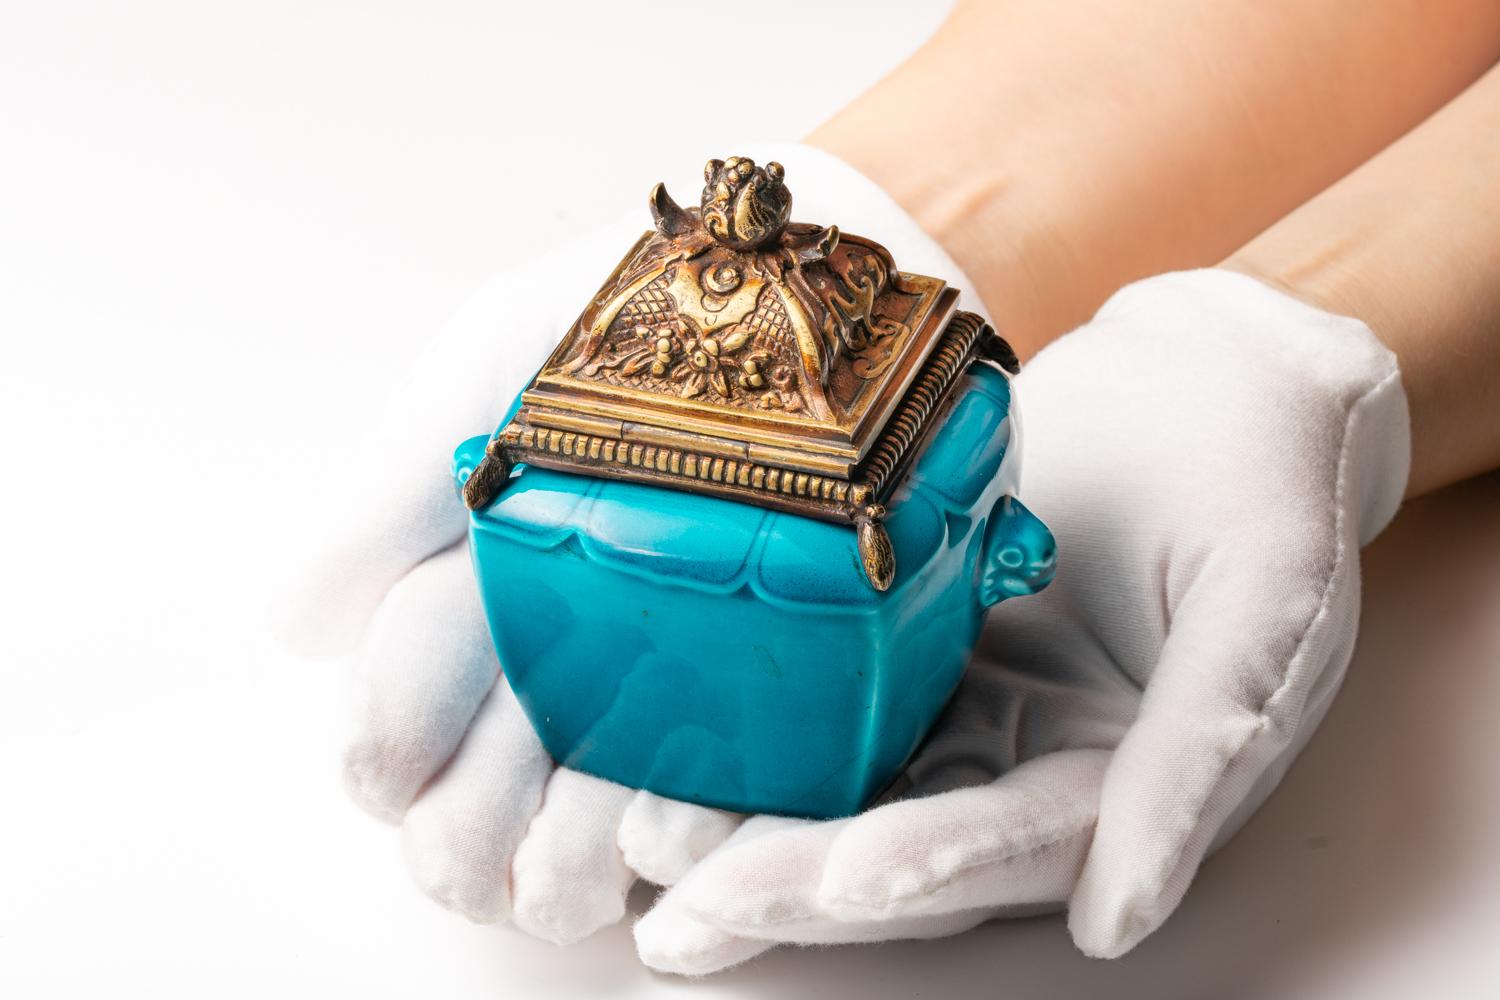 Dieses blau emaillierte Steingut-Tintenfass aus dem 19. Jahrhundert wurde um 1880 von dem berühmten französischen Keramikkünstler Théodore Deck hergestellt. Deck war bekannt für die von ihm entwickelten Glasuren, insbesondere für ein sattes